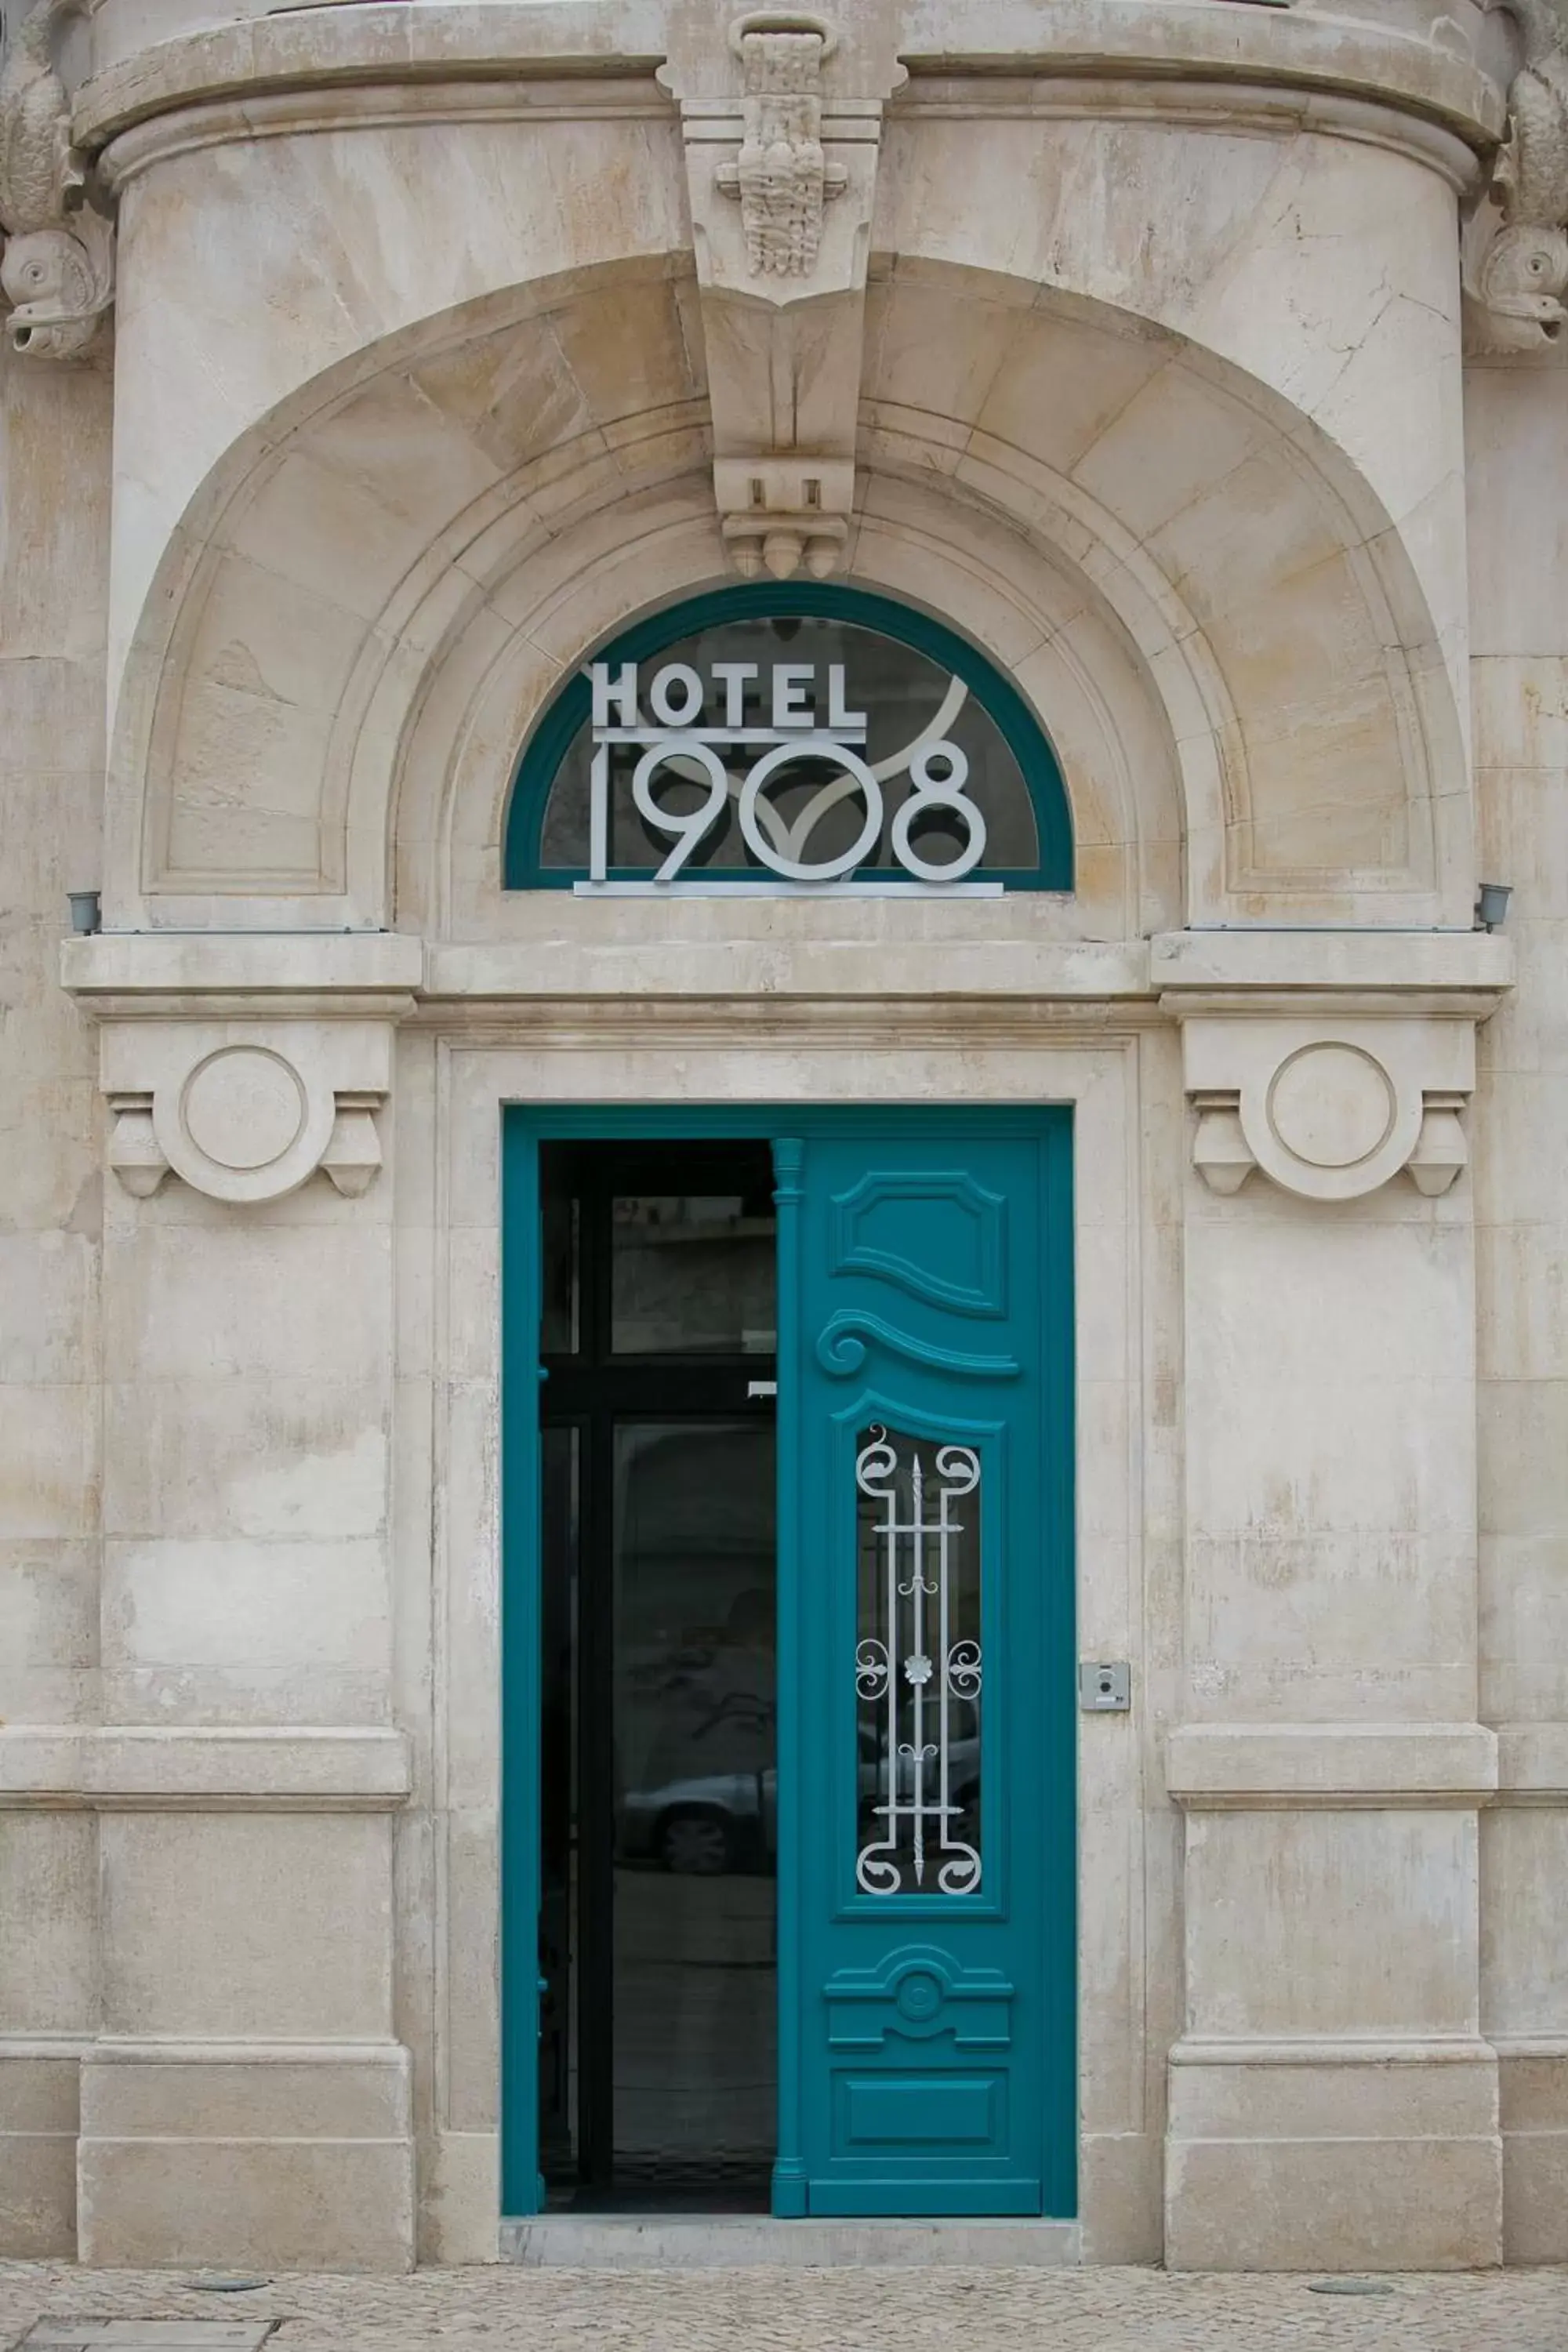 Facade/entrance in 1908 Lisboa Hotel